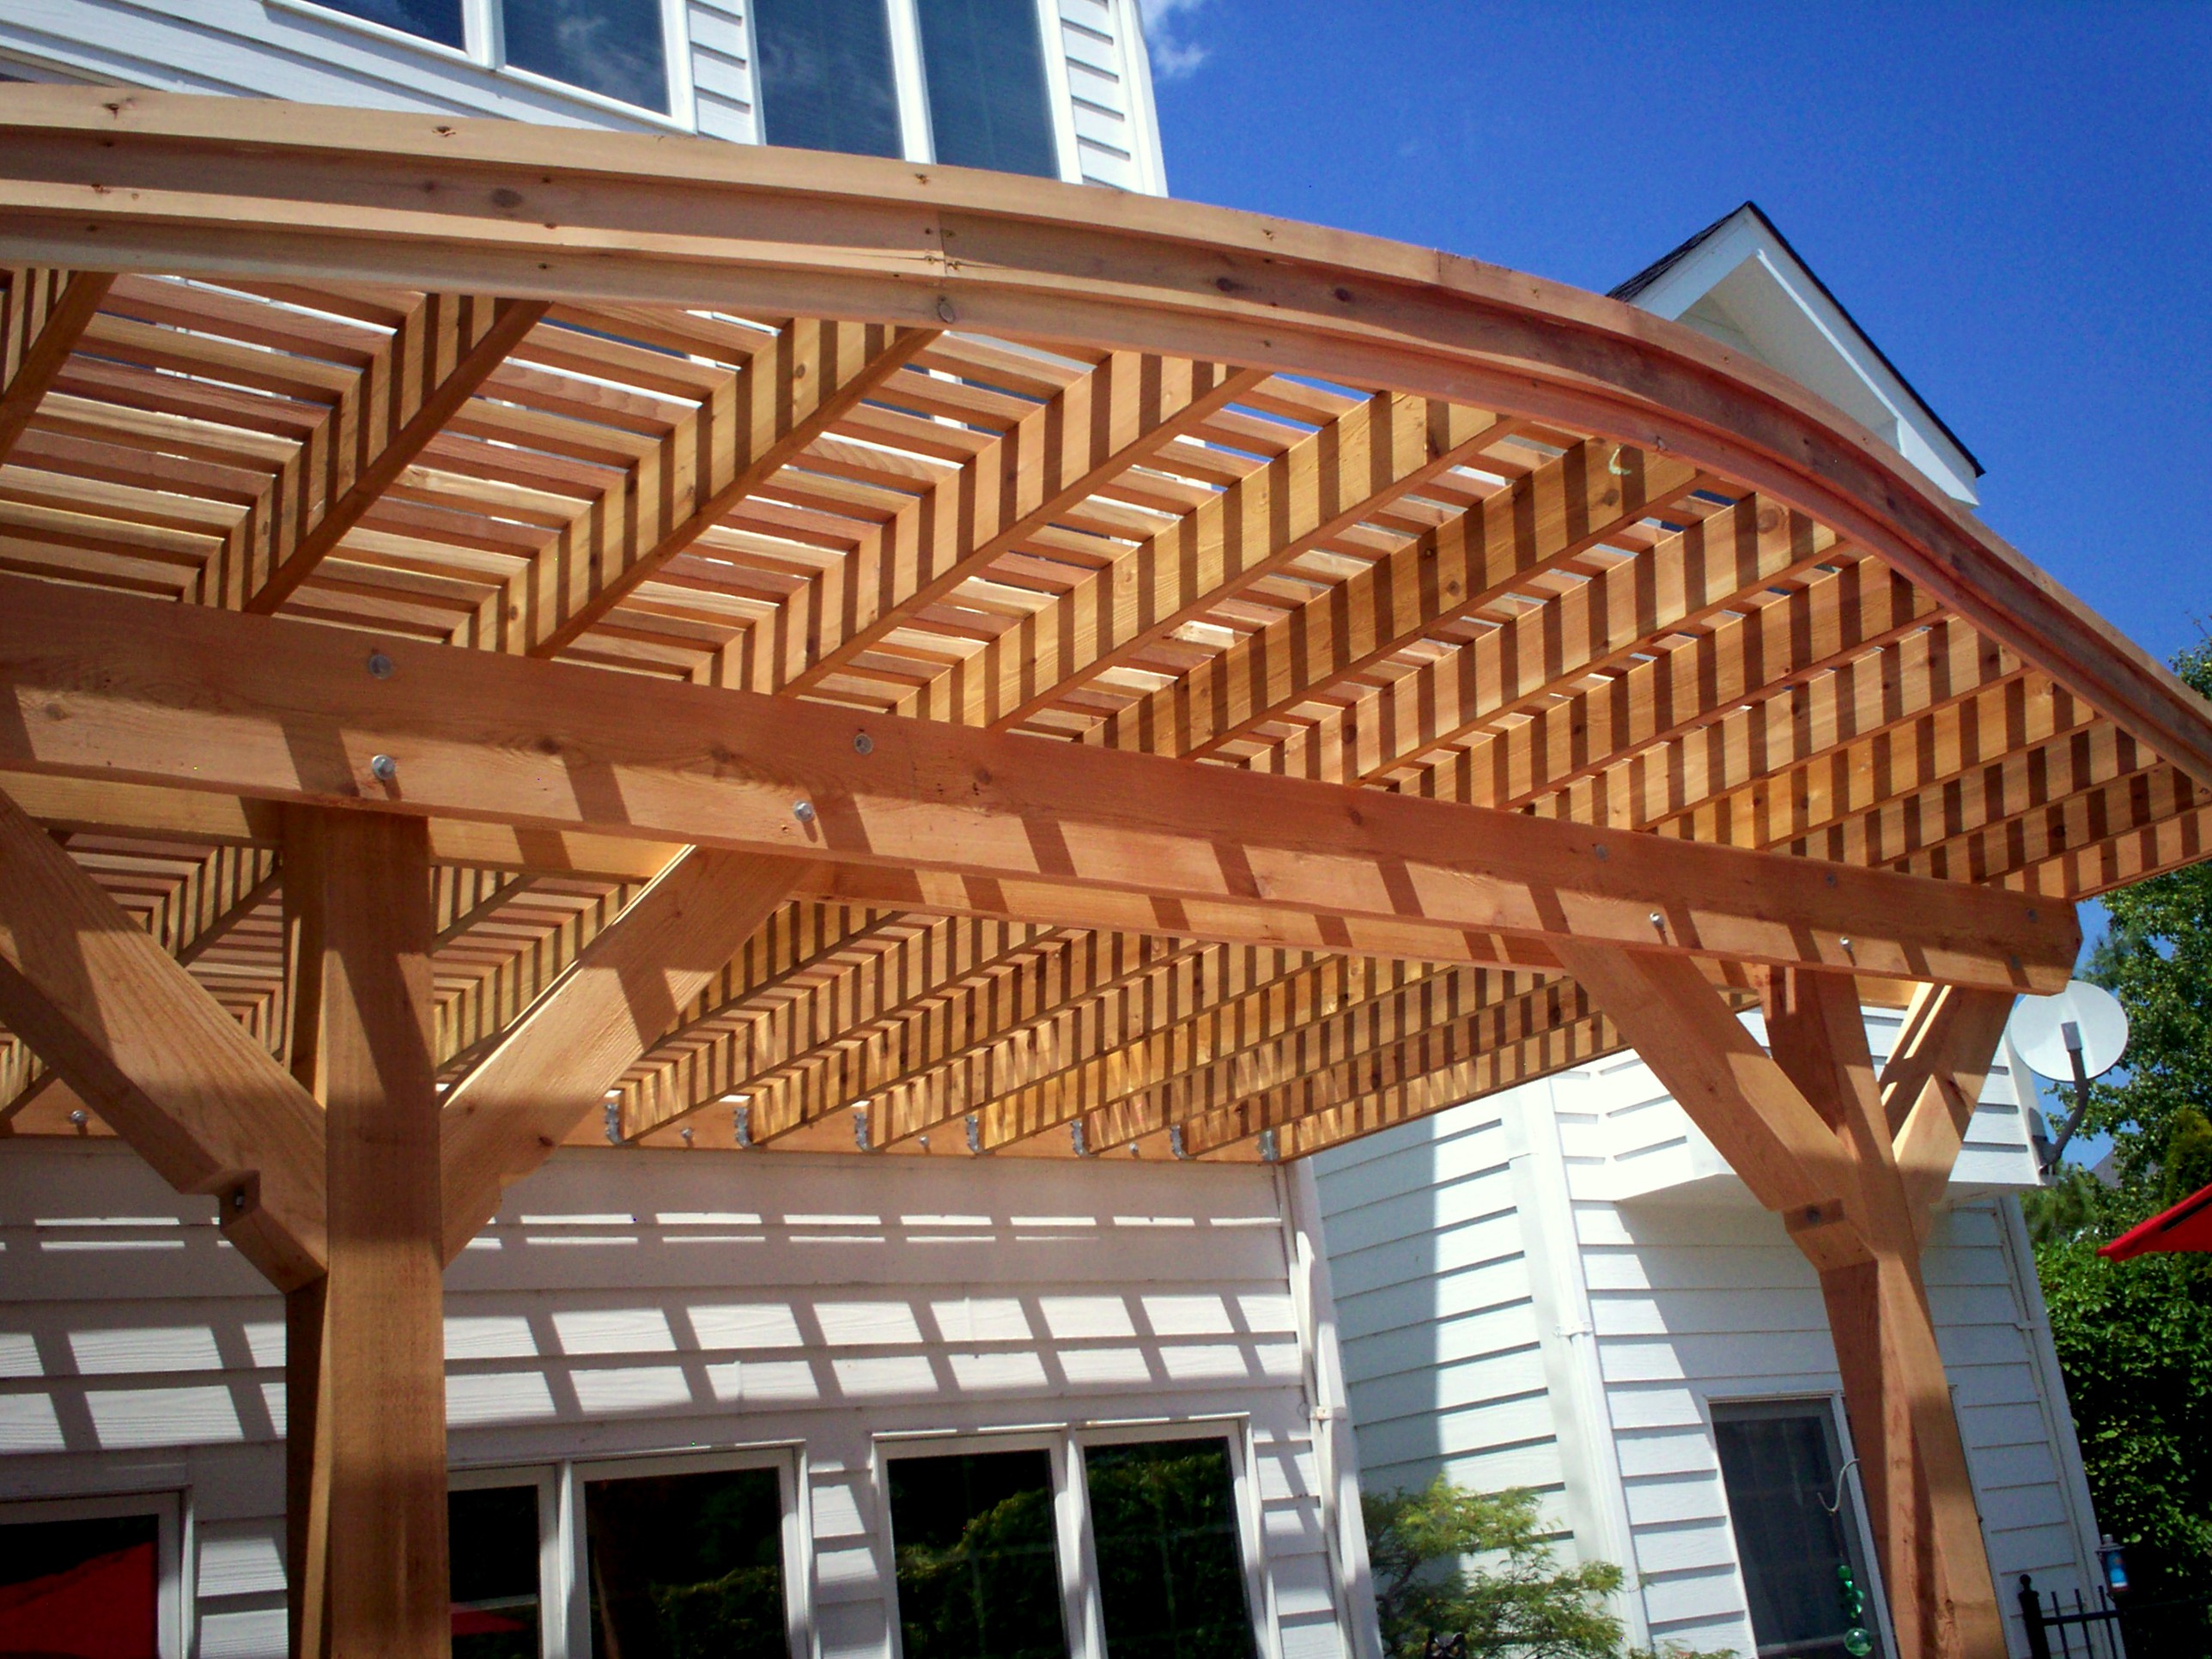 Aesthetic Decks, Porches, Pergolas in St. Louis: Where design ...